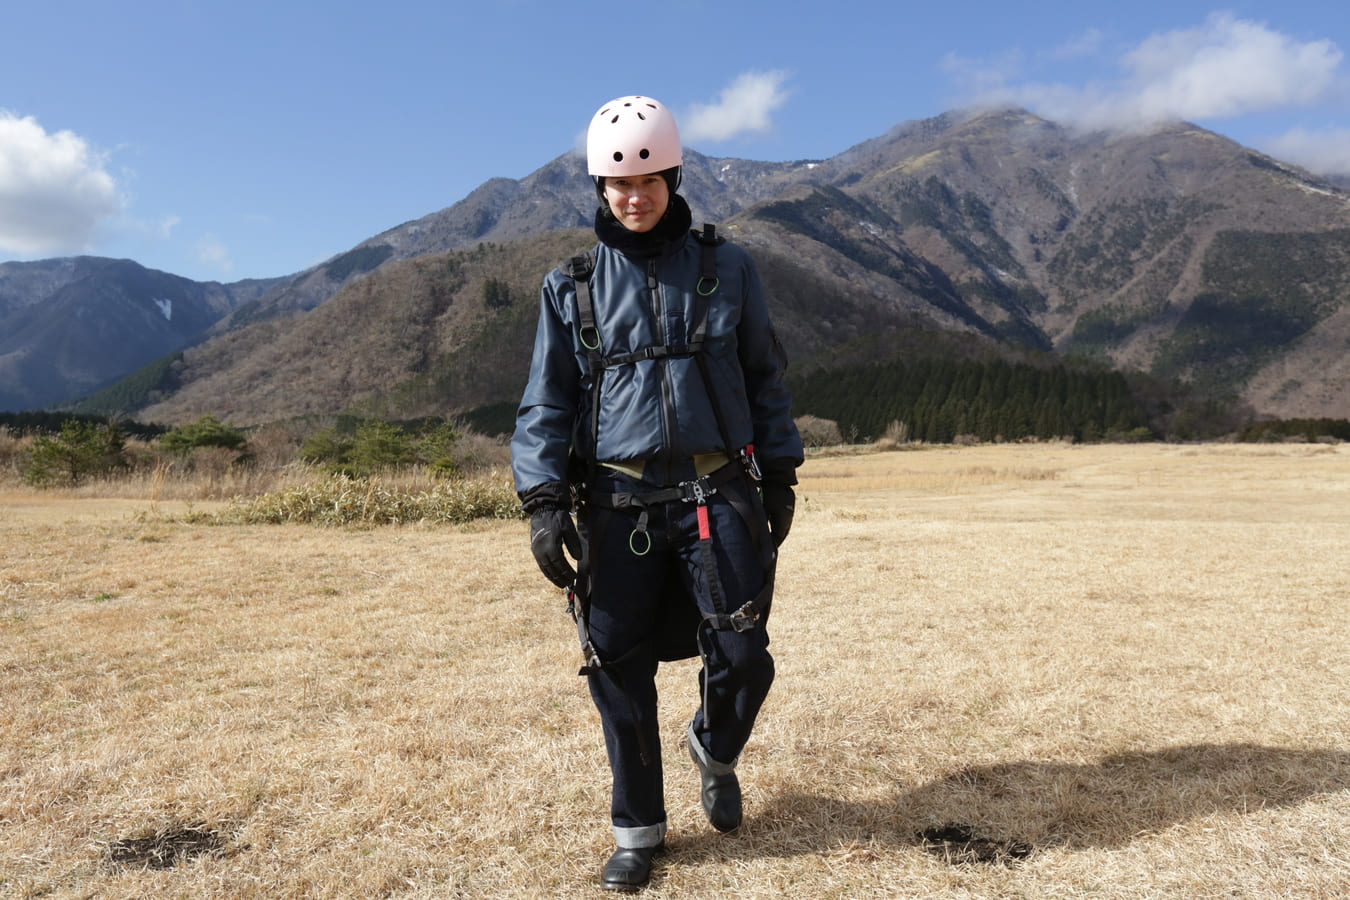 พาราไกลดิ้ง Asagiri kogen Paragliding